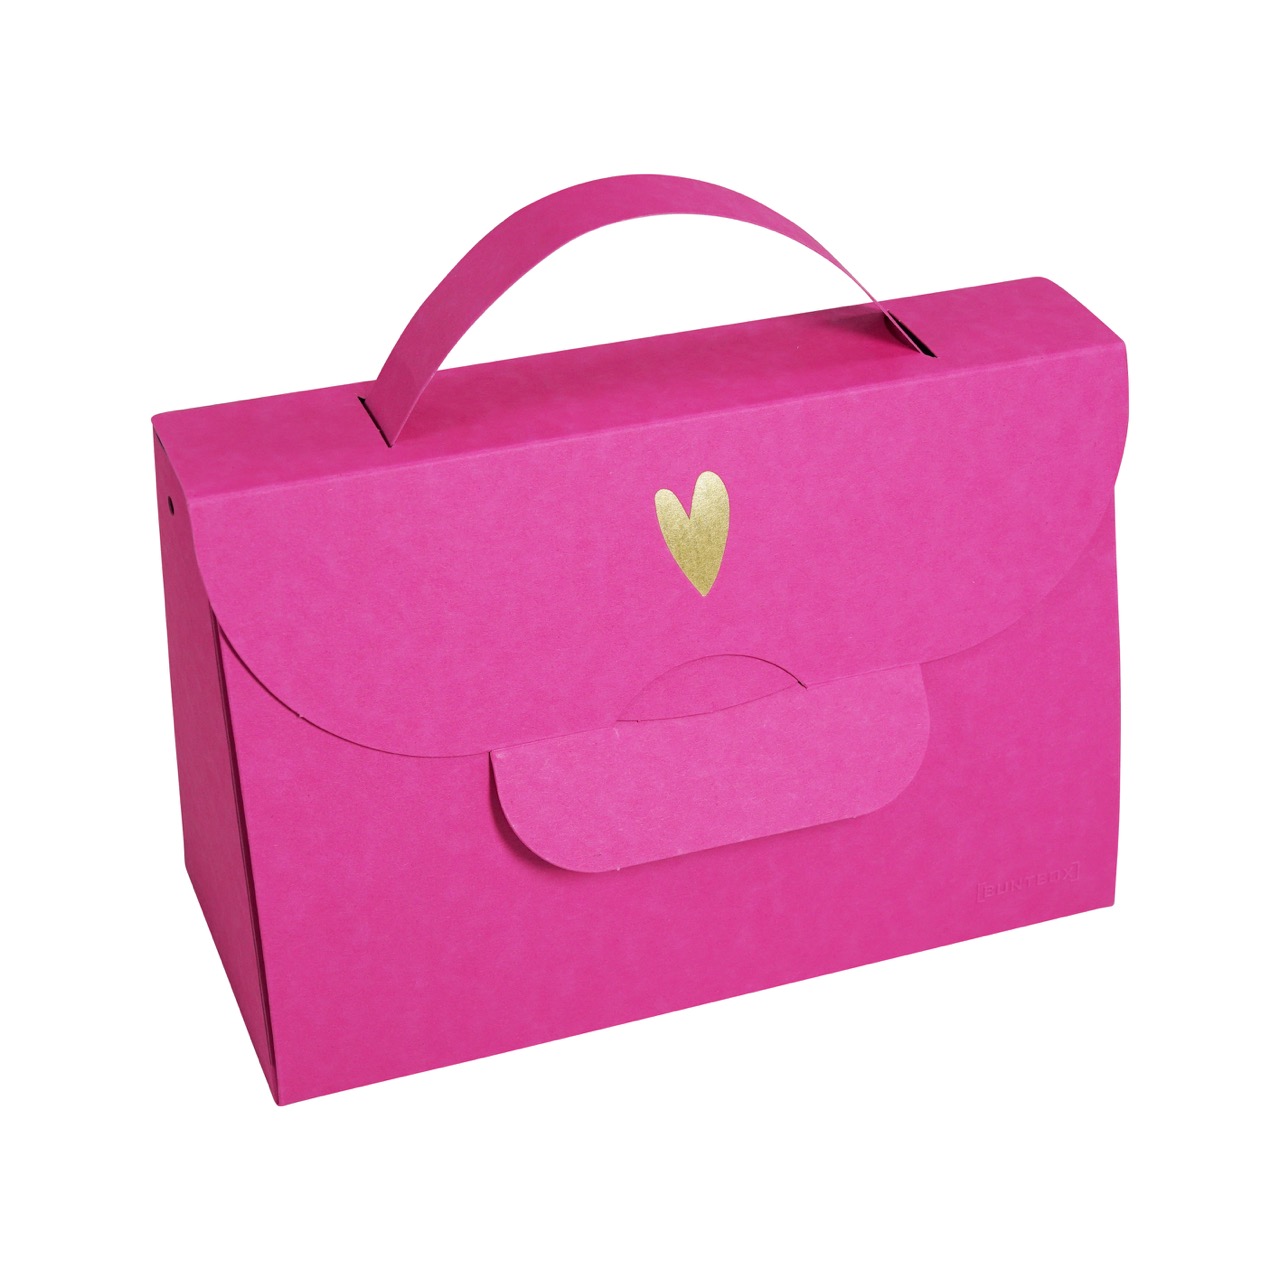 Buntbox Handbag XL Goldenes Herz in Magenta